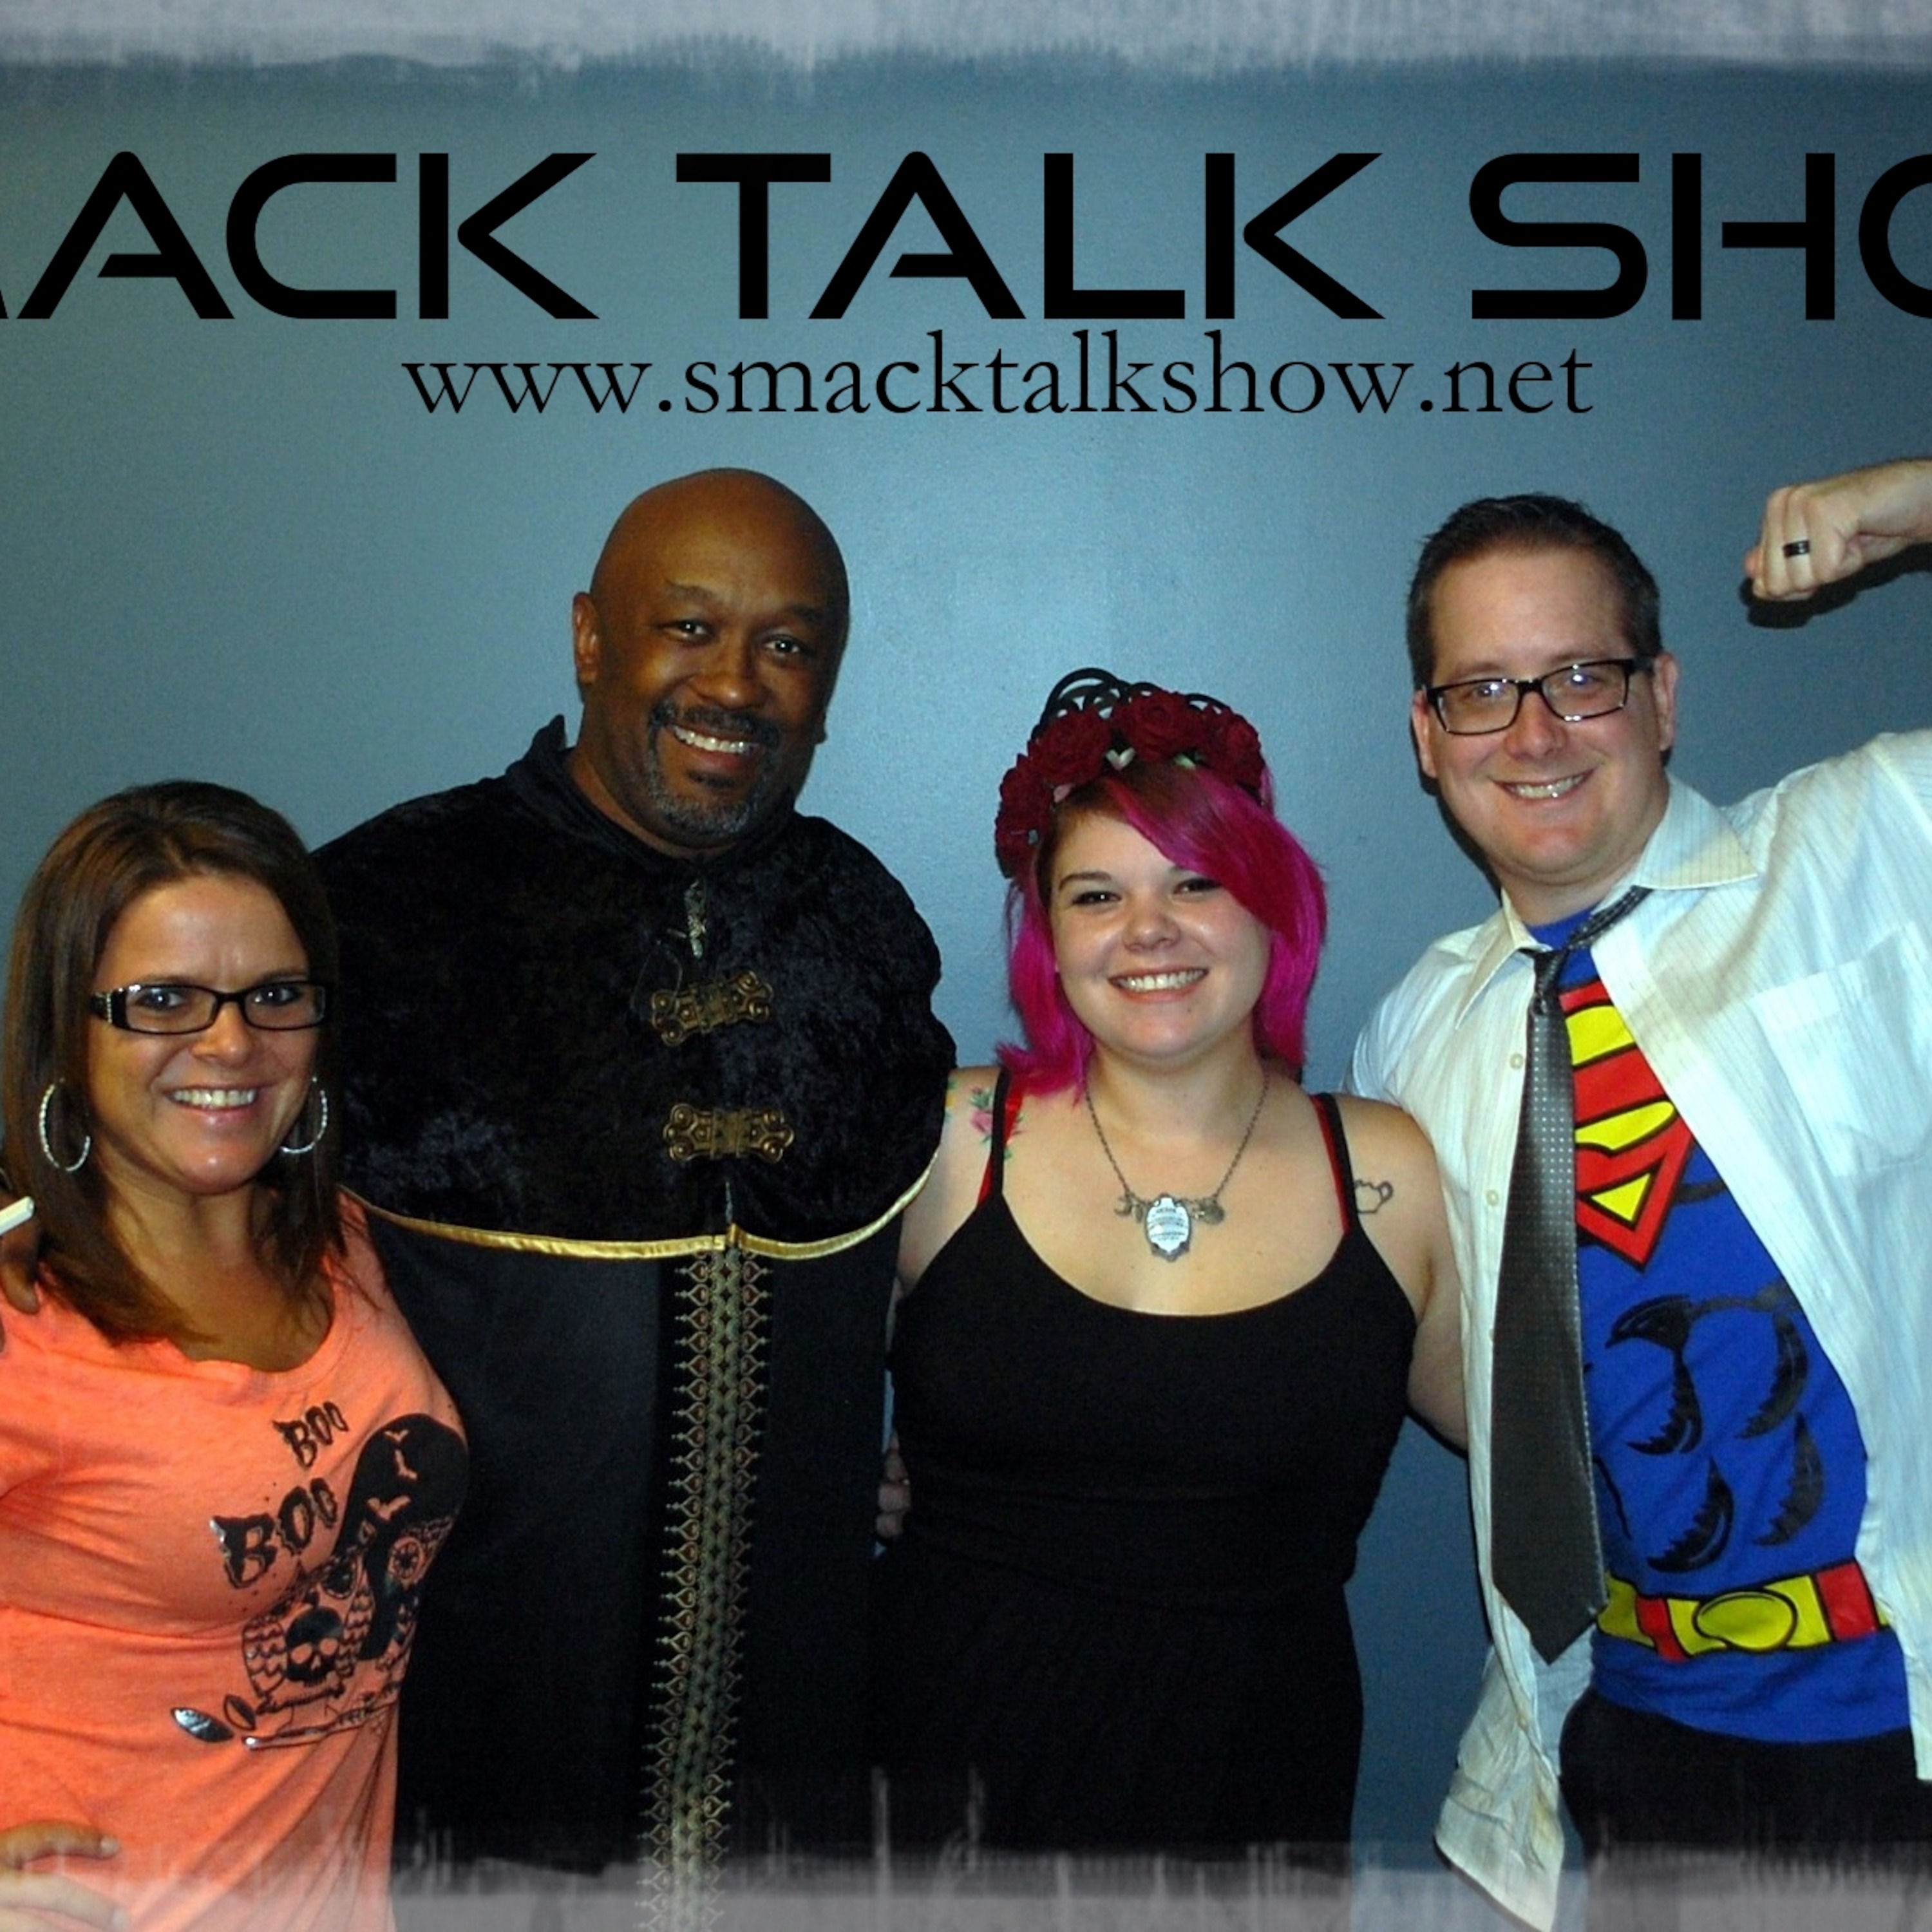 SmackTalk Show's Past Shows